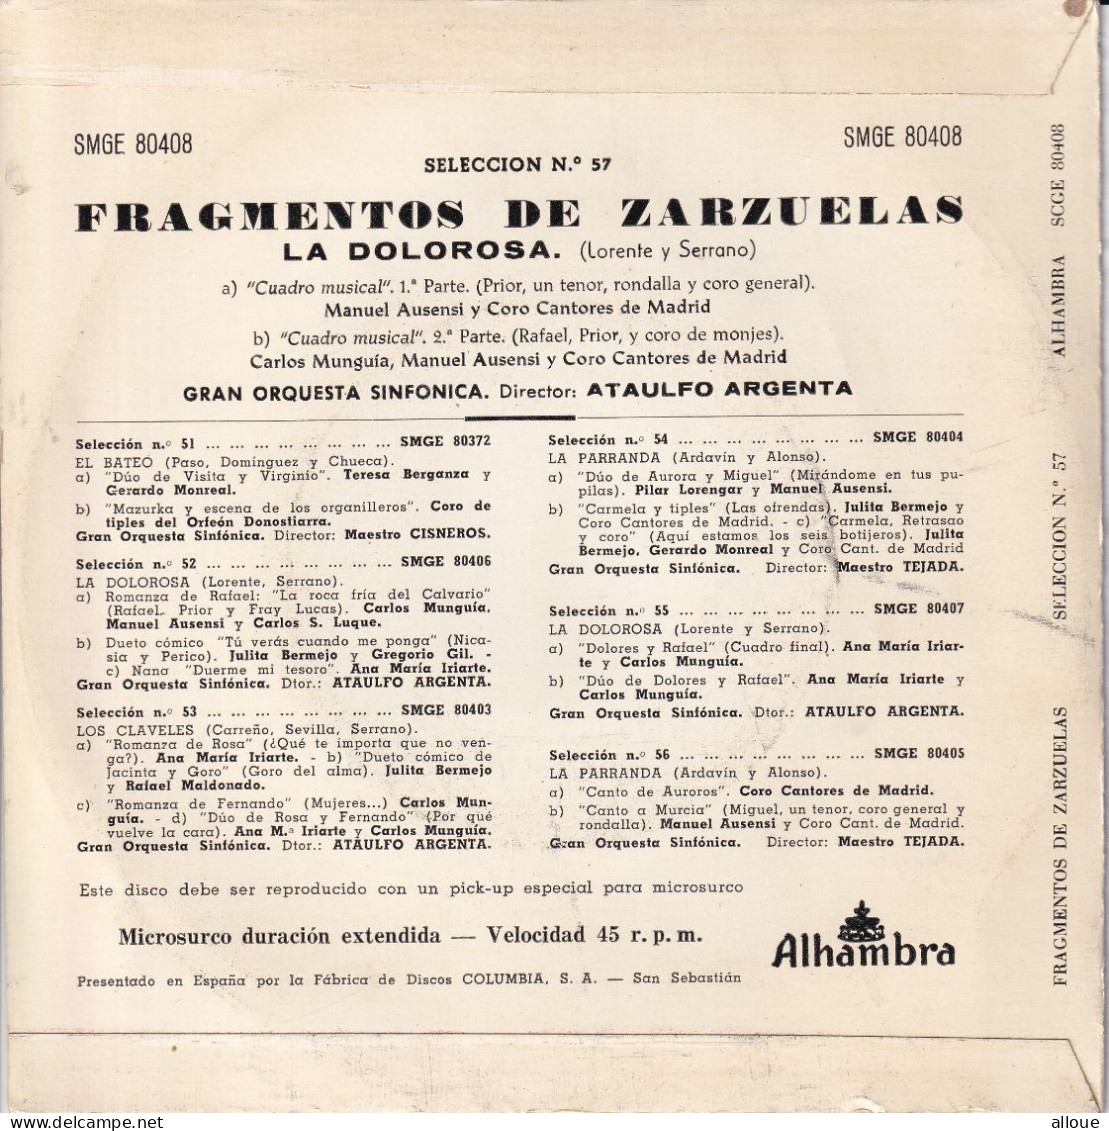 FRAGMENTOS DE ZARZUELAS - LA DOLOROSA - SPAIN EP - CUADRO MUSICAL 1 & 2 - Classical